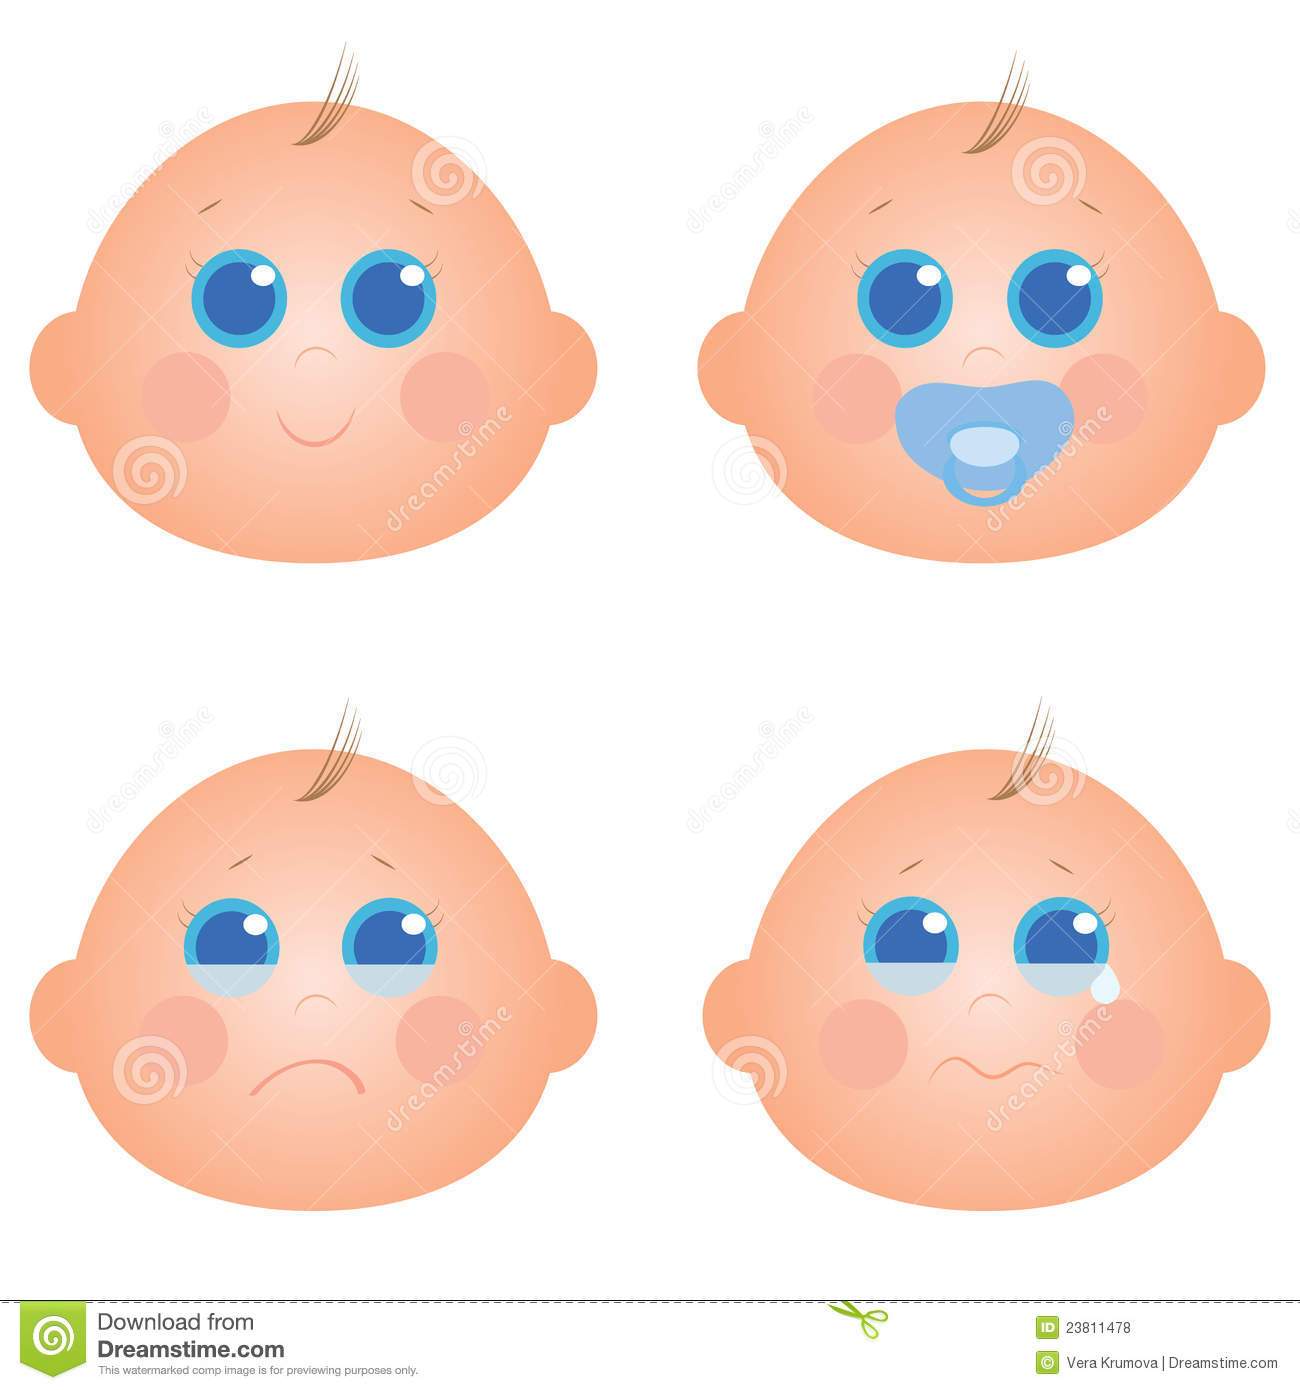 Baby boy face clipart 6 » Clipart Portal.